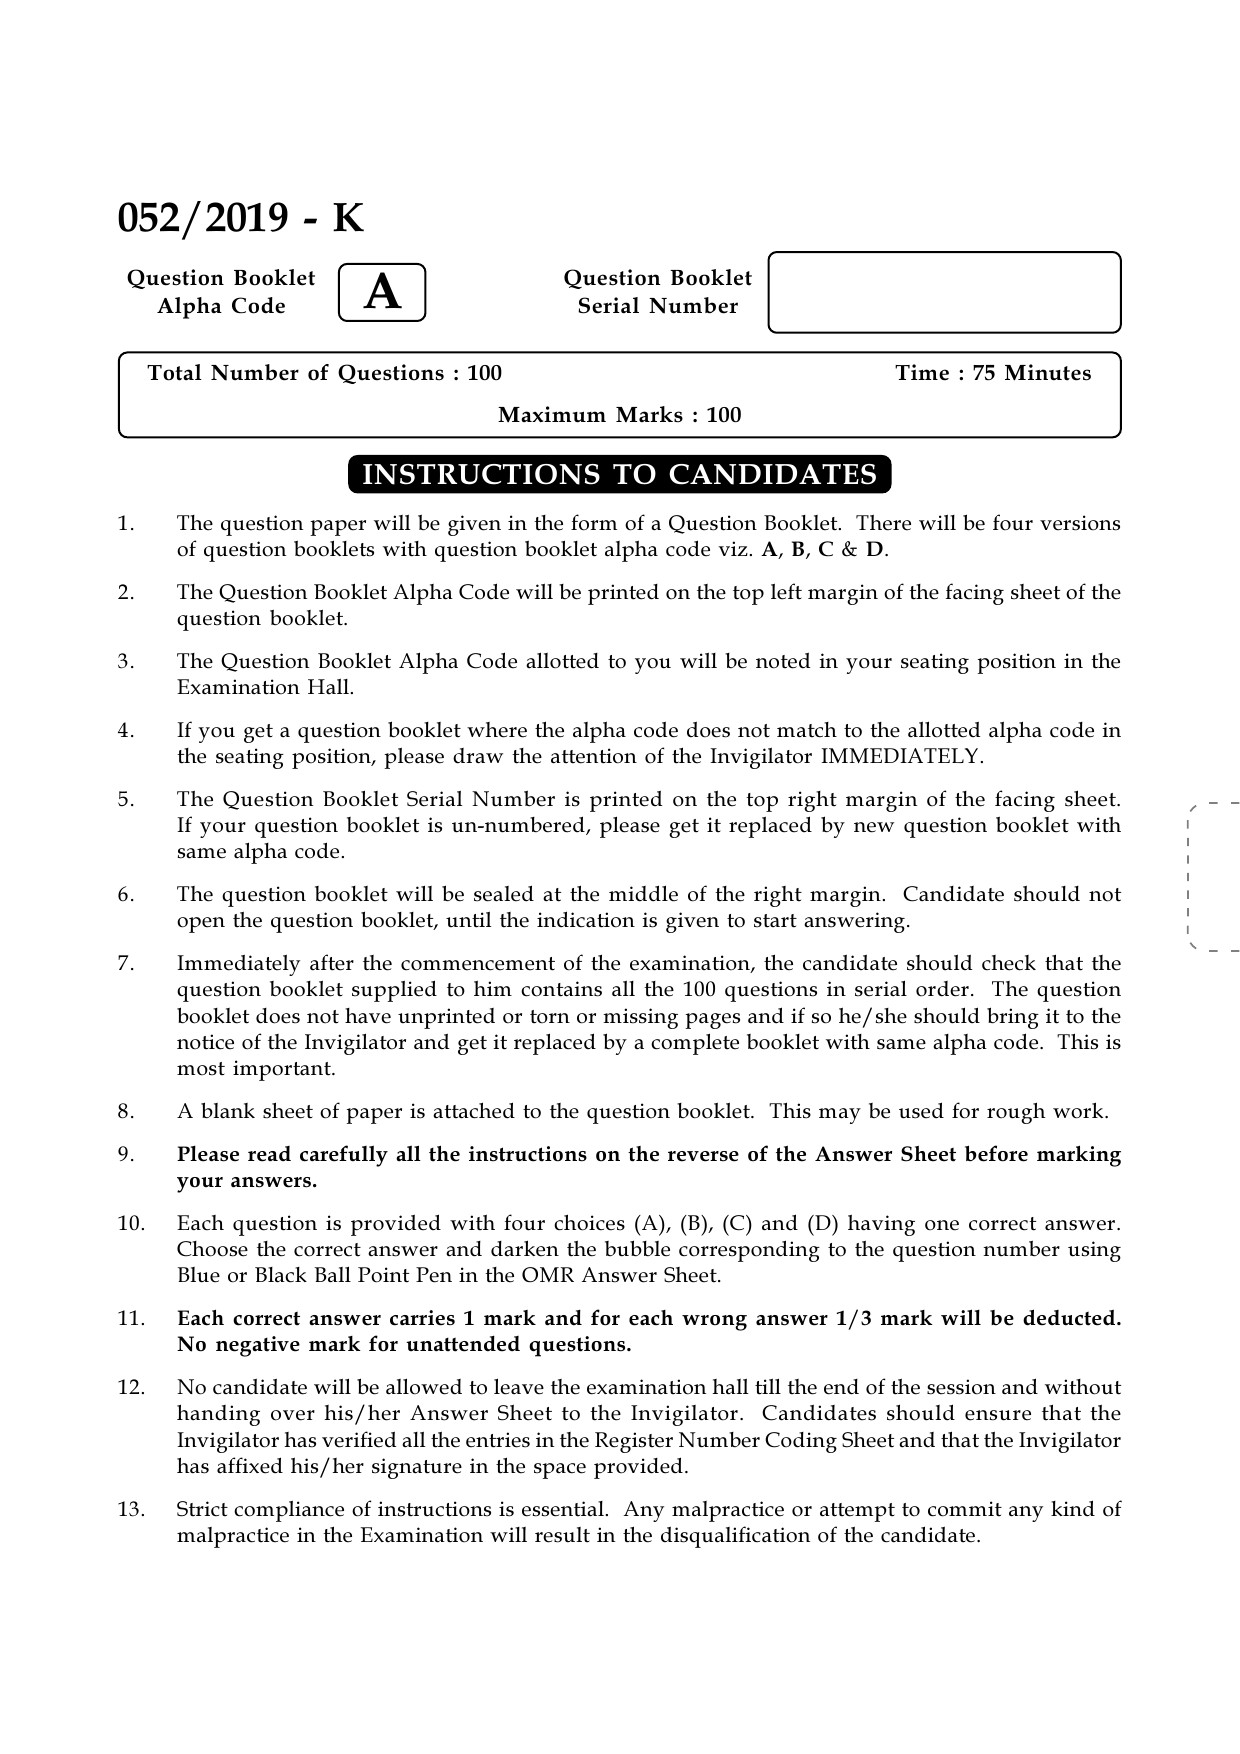 Village Extension Officer Grade II Exam Paper 2019 Code 522019 K 1